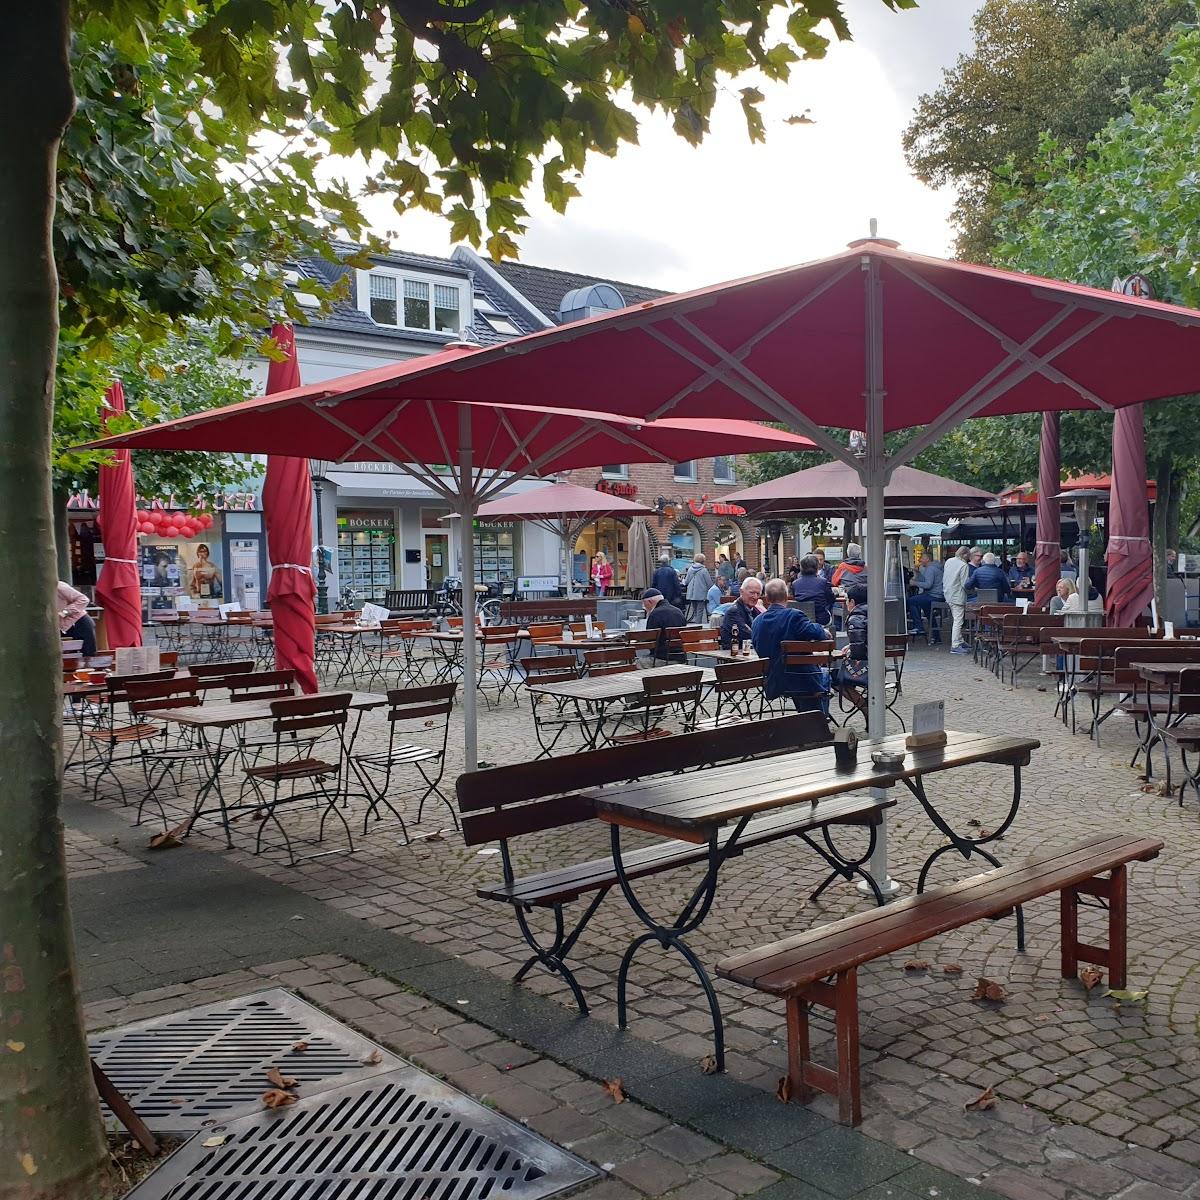 Restaurant "Cafe Schuster" in Düsseldorf